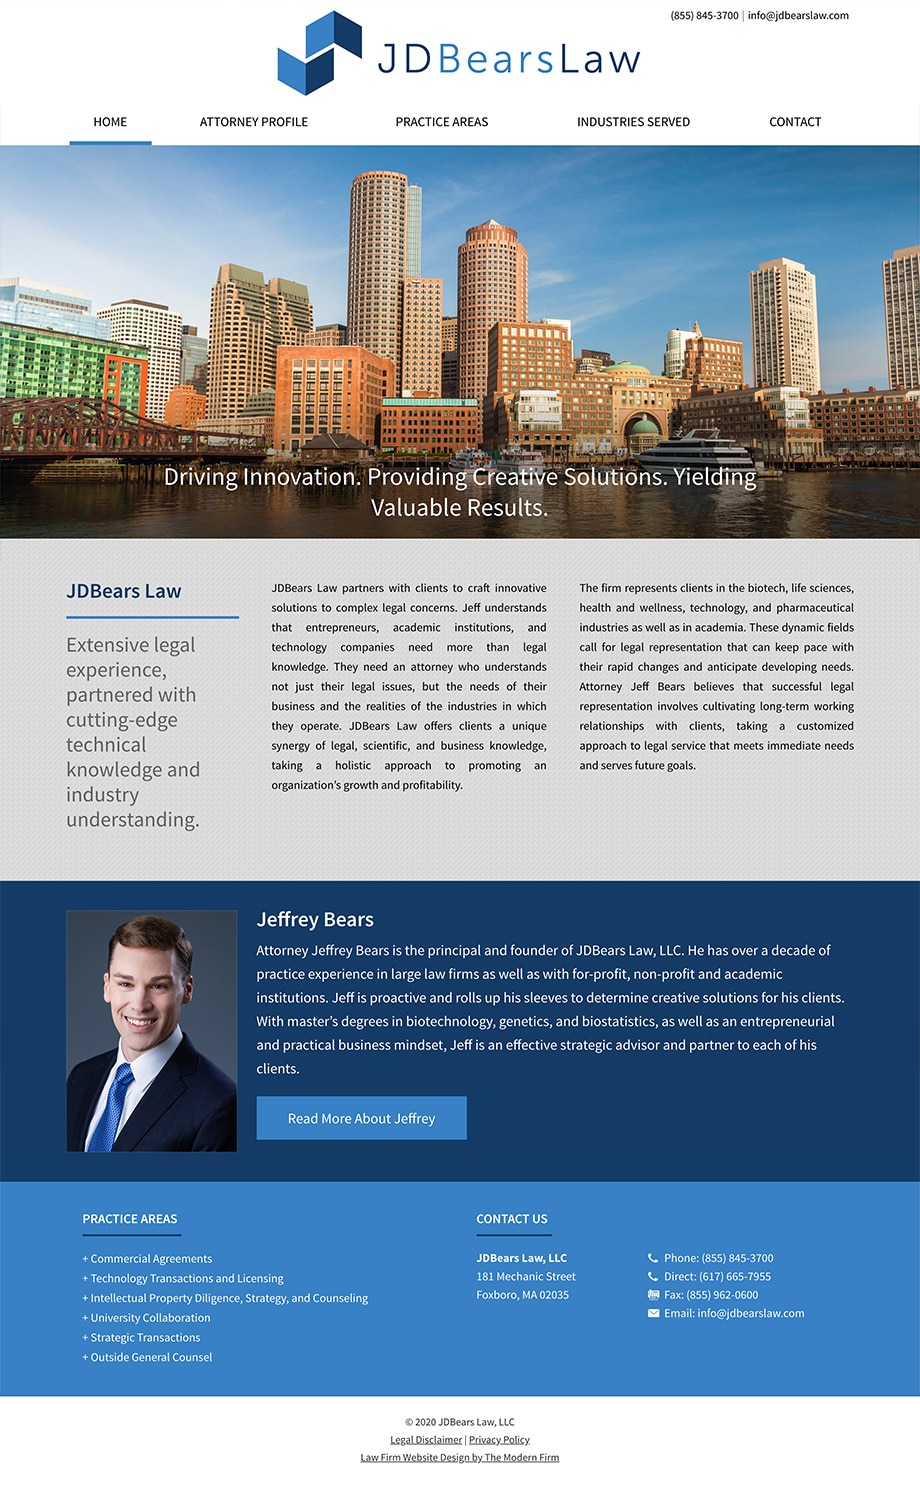 Law Firm Website for JDBears Law, LLC